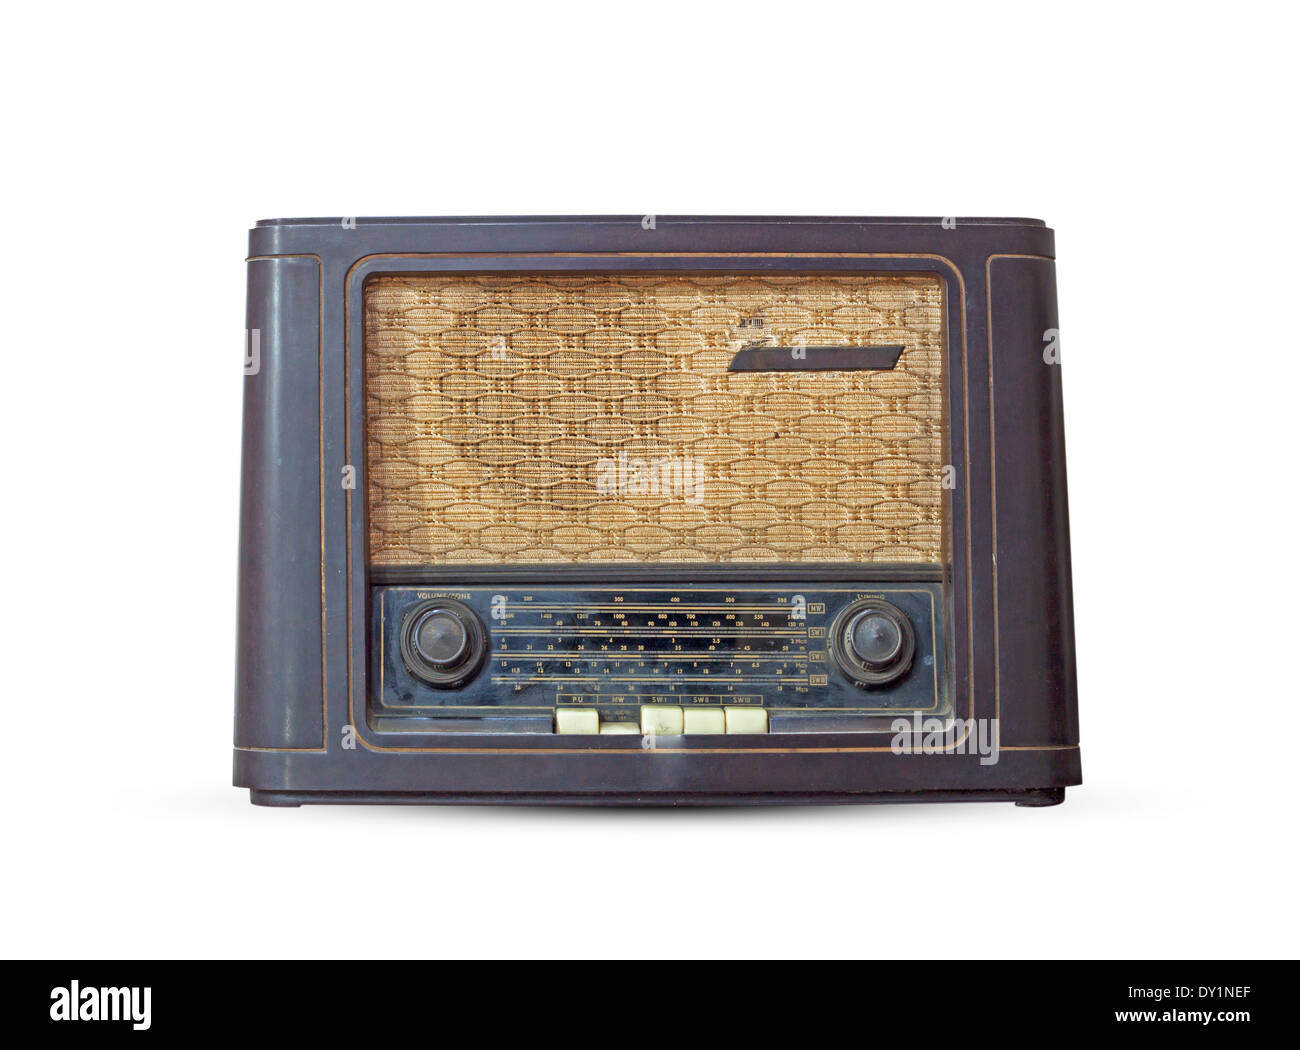 La radio antigua. Ilustración realista de un receptor de radio antiguo del siglo pasado Foto de stock